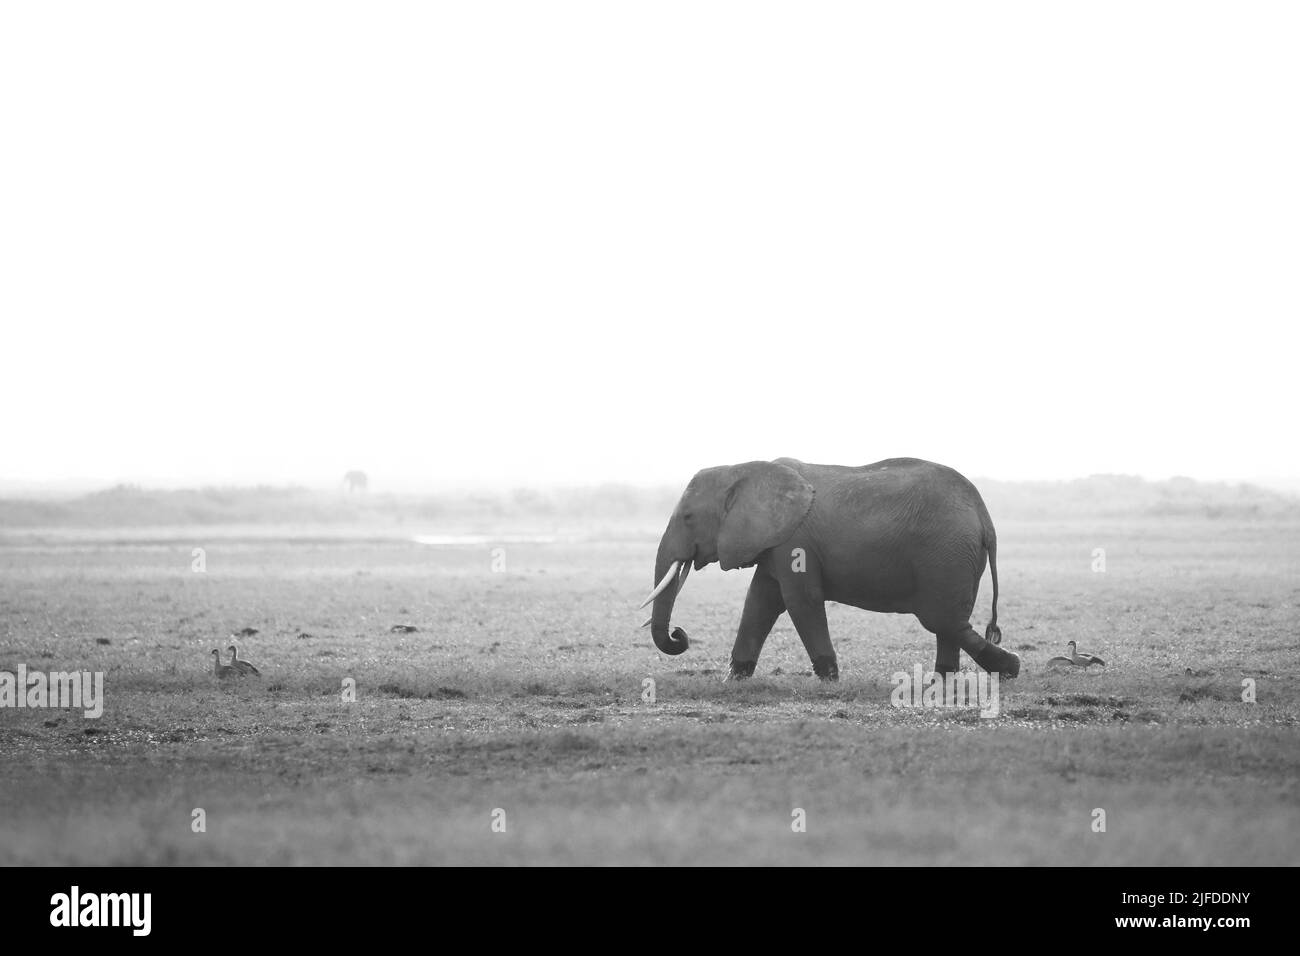 African Elephant (Loxodonta africana) Walking on Savannah. Black and White, Misty Look. Amboseli, Kenya Stock Photo